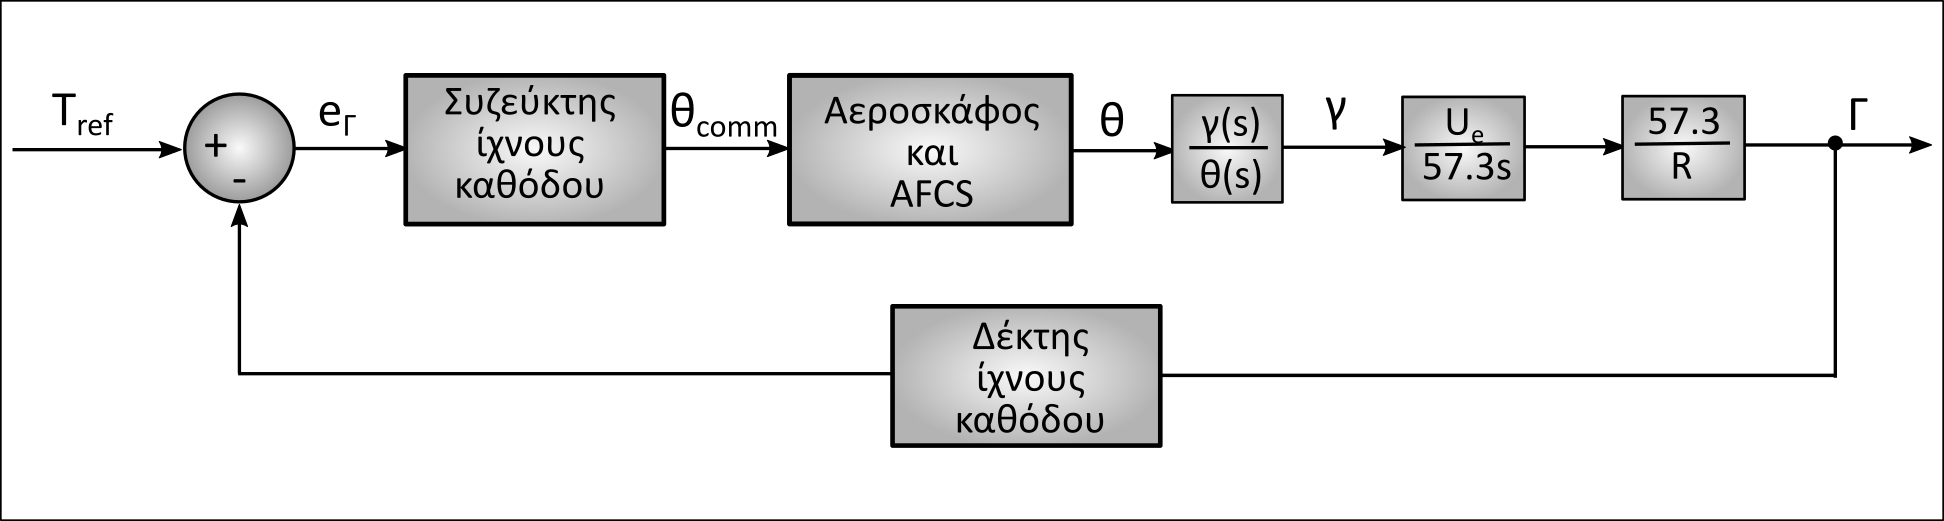 Η εικόνα δεν εμφανίζεται/Image is not displayed - Δομικό διάγραμμα ΣΑΕ διατήρησης του ίχνους καθόδου / SAS diagramm, flare